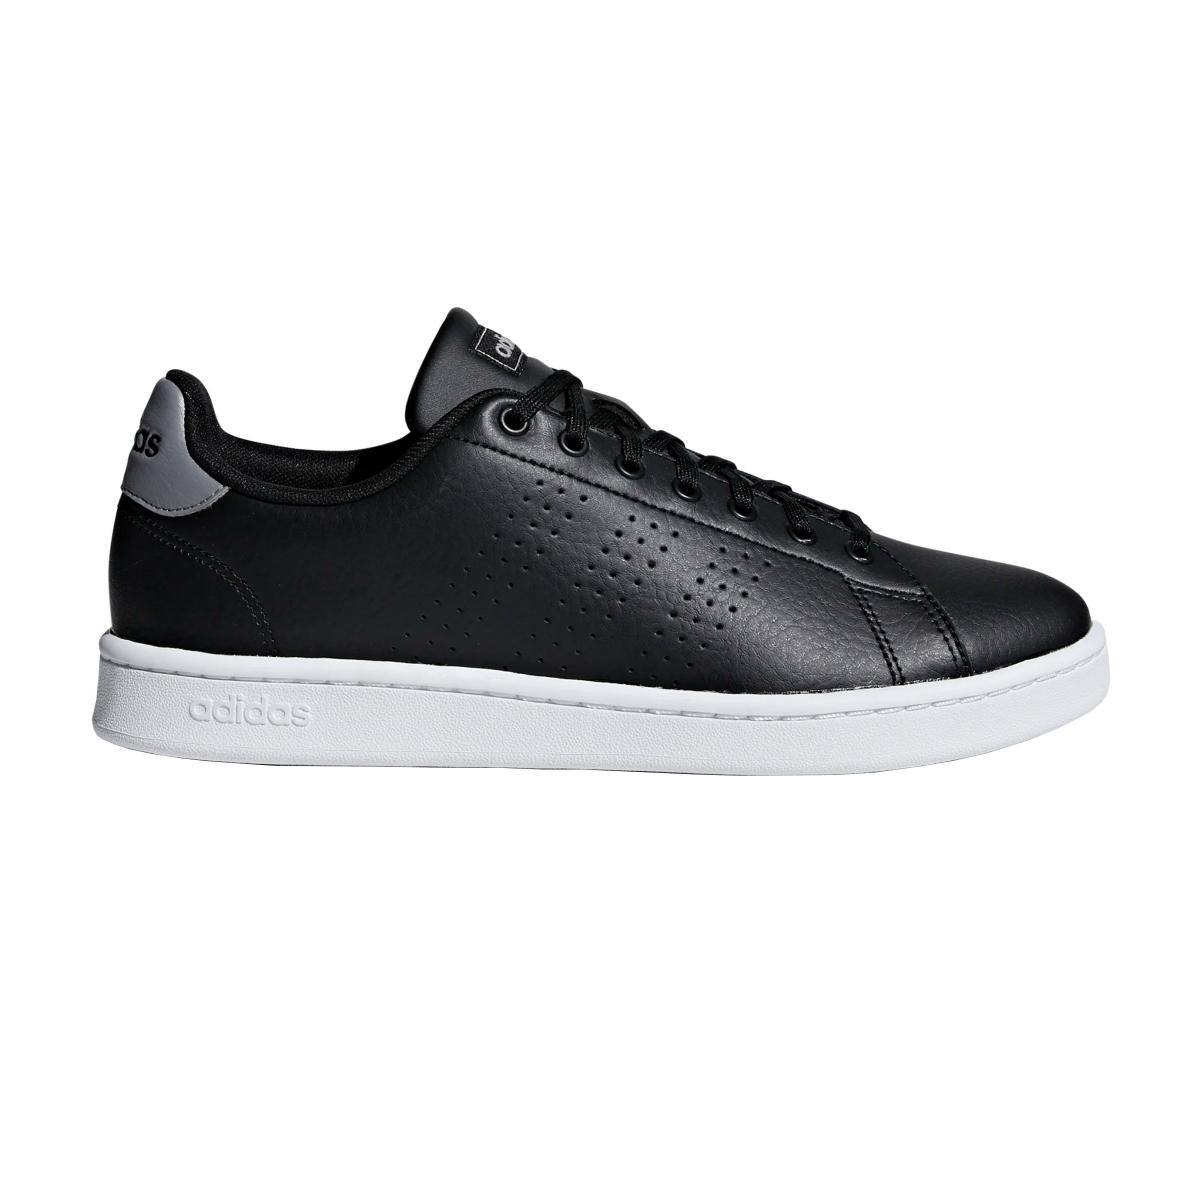 Scarpe Sneakers Adidas Advantage nere basse da uomo rif. F36431